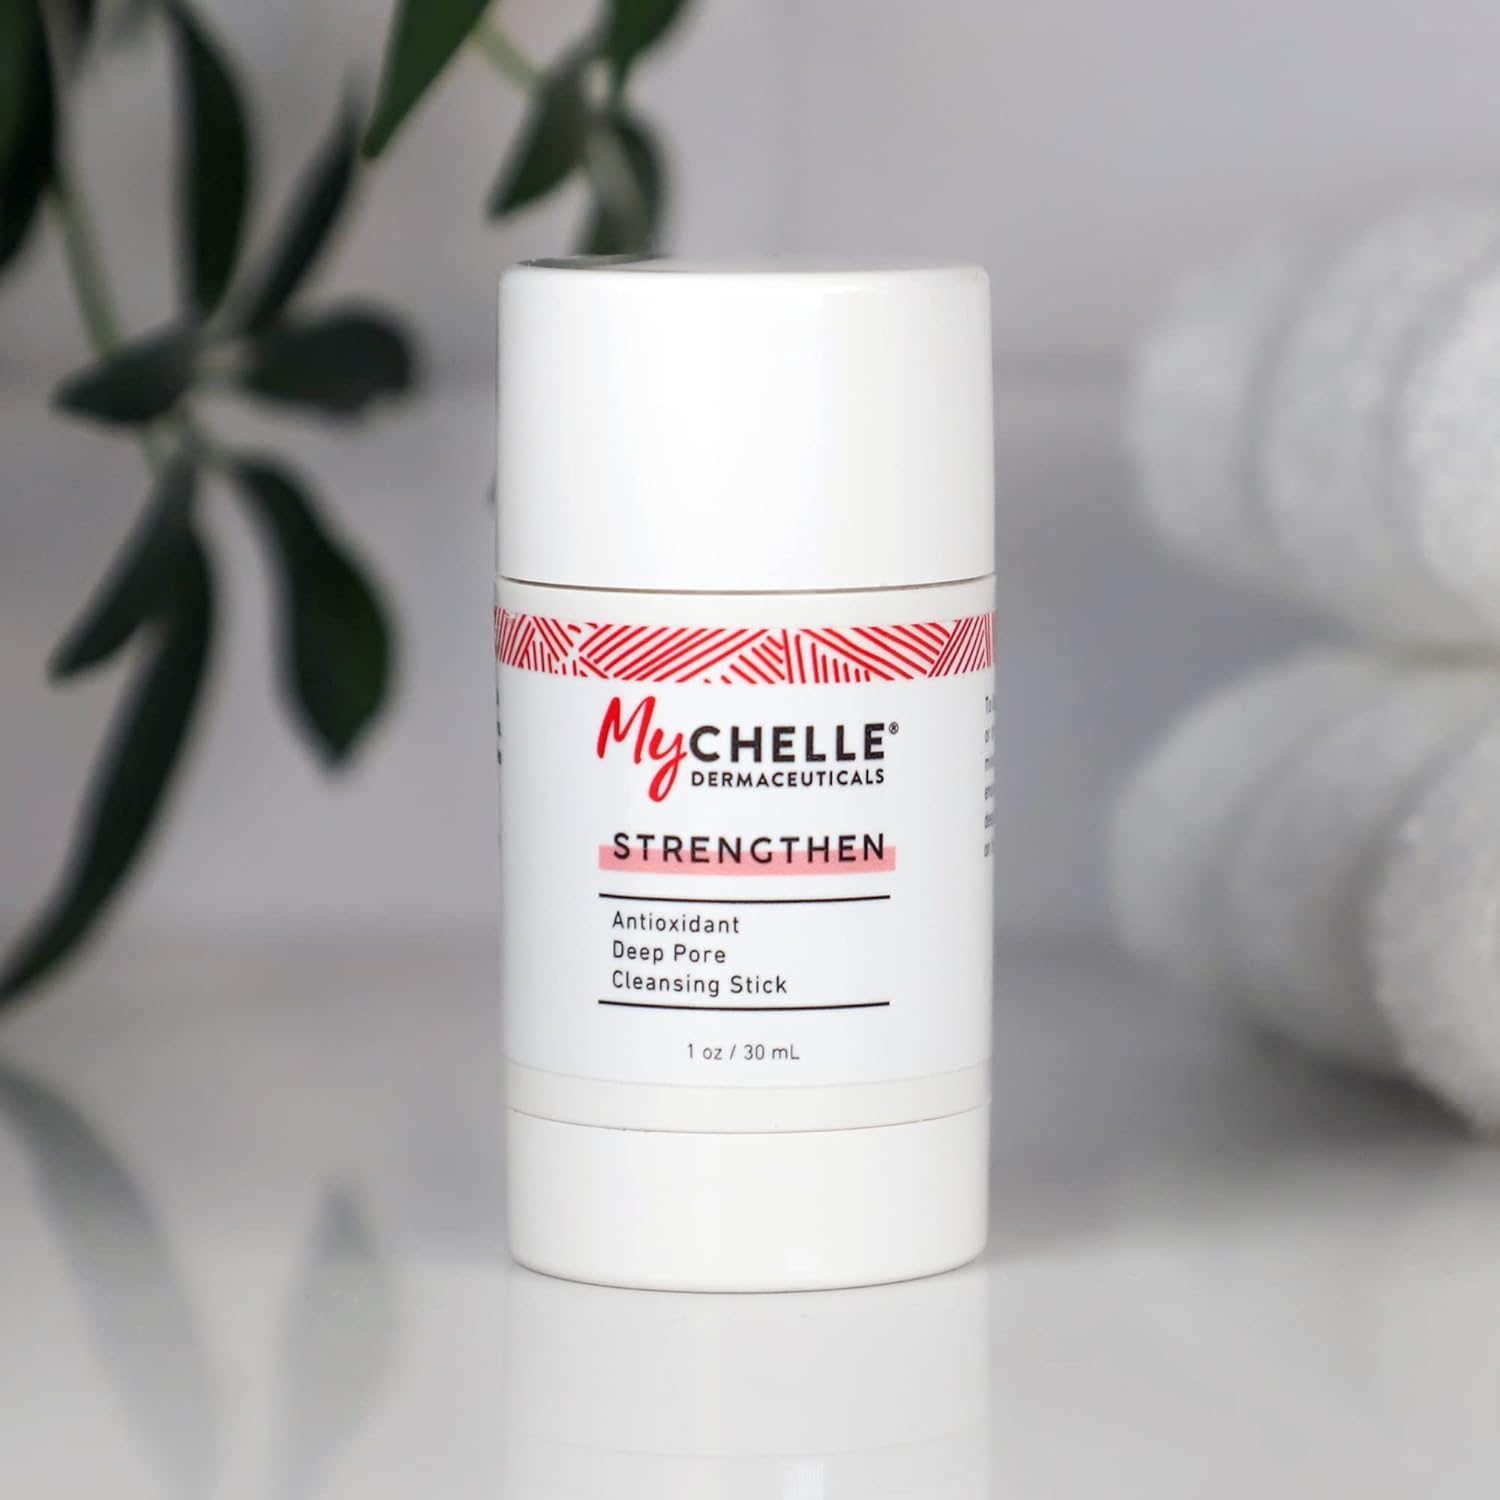 MyChelle Dermaceuticals Antioxidant Deep Pore Cleansing Stick : Beauty & Personal Care